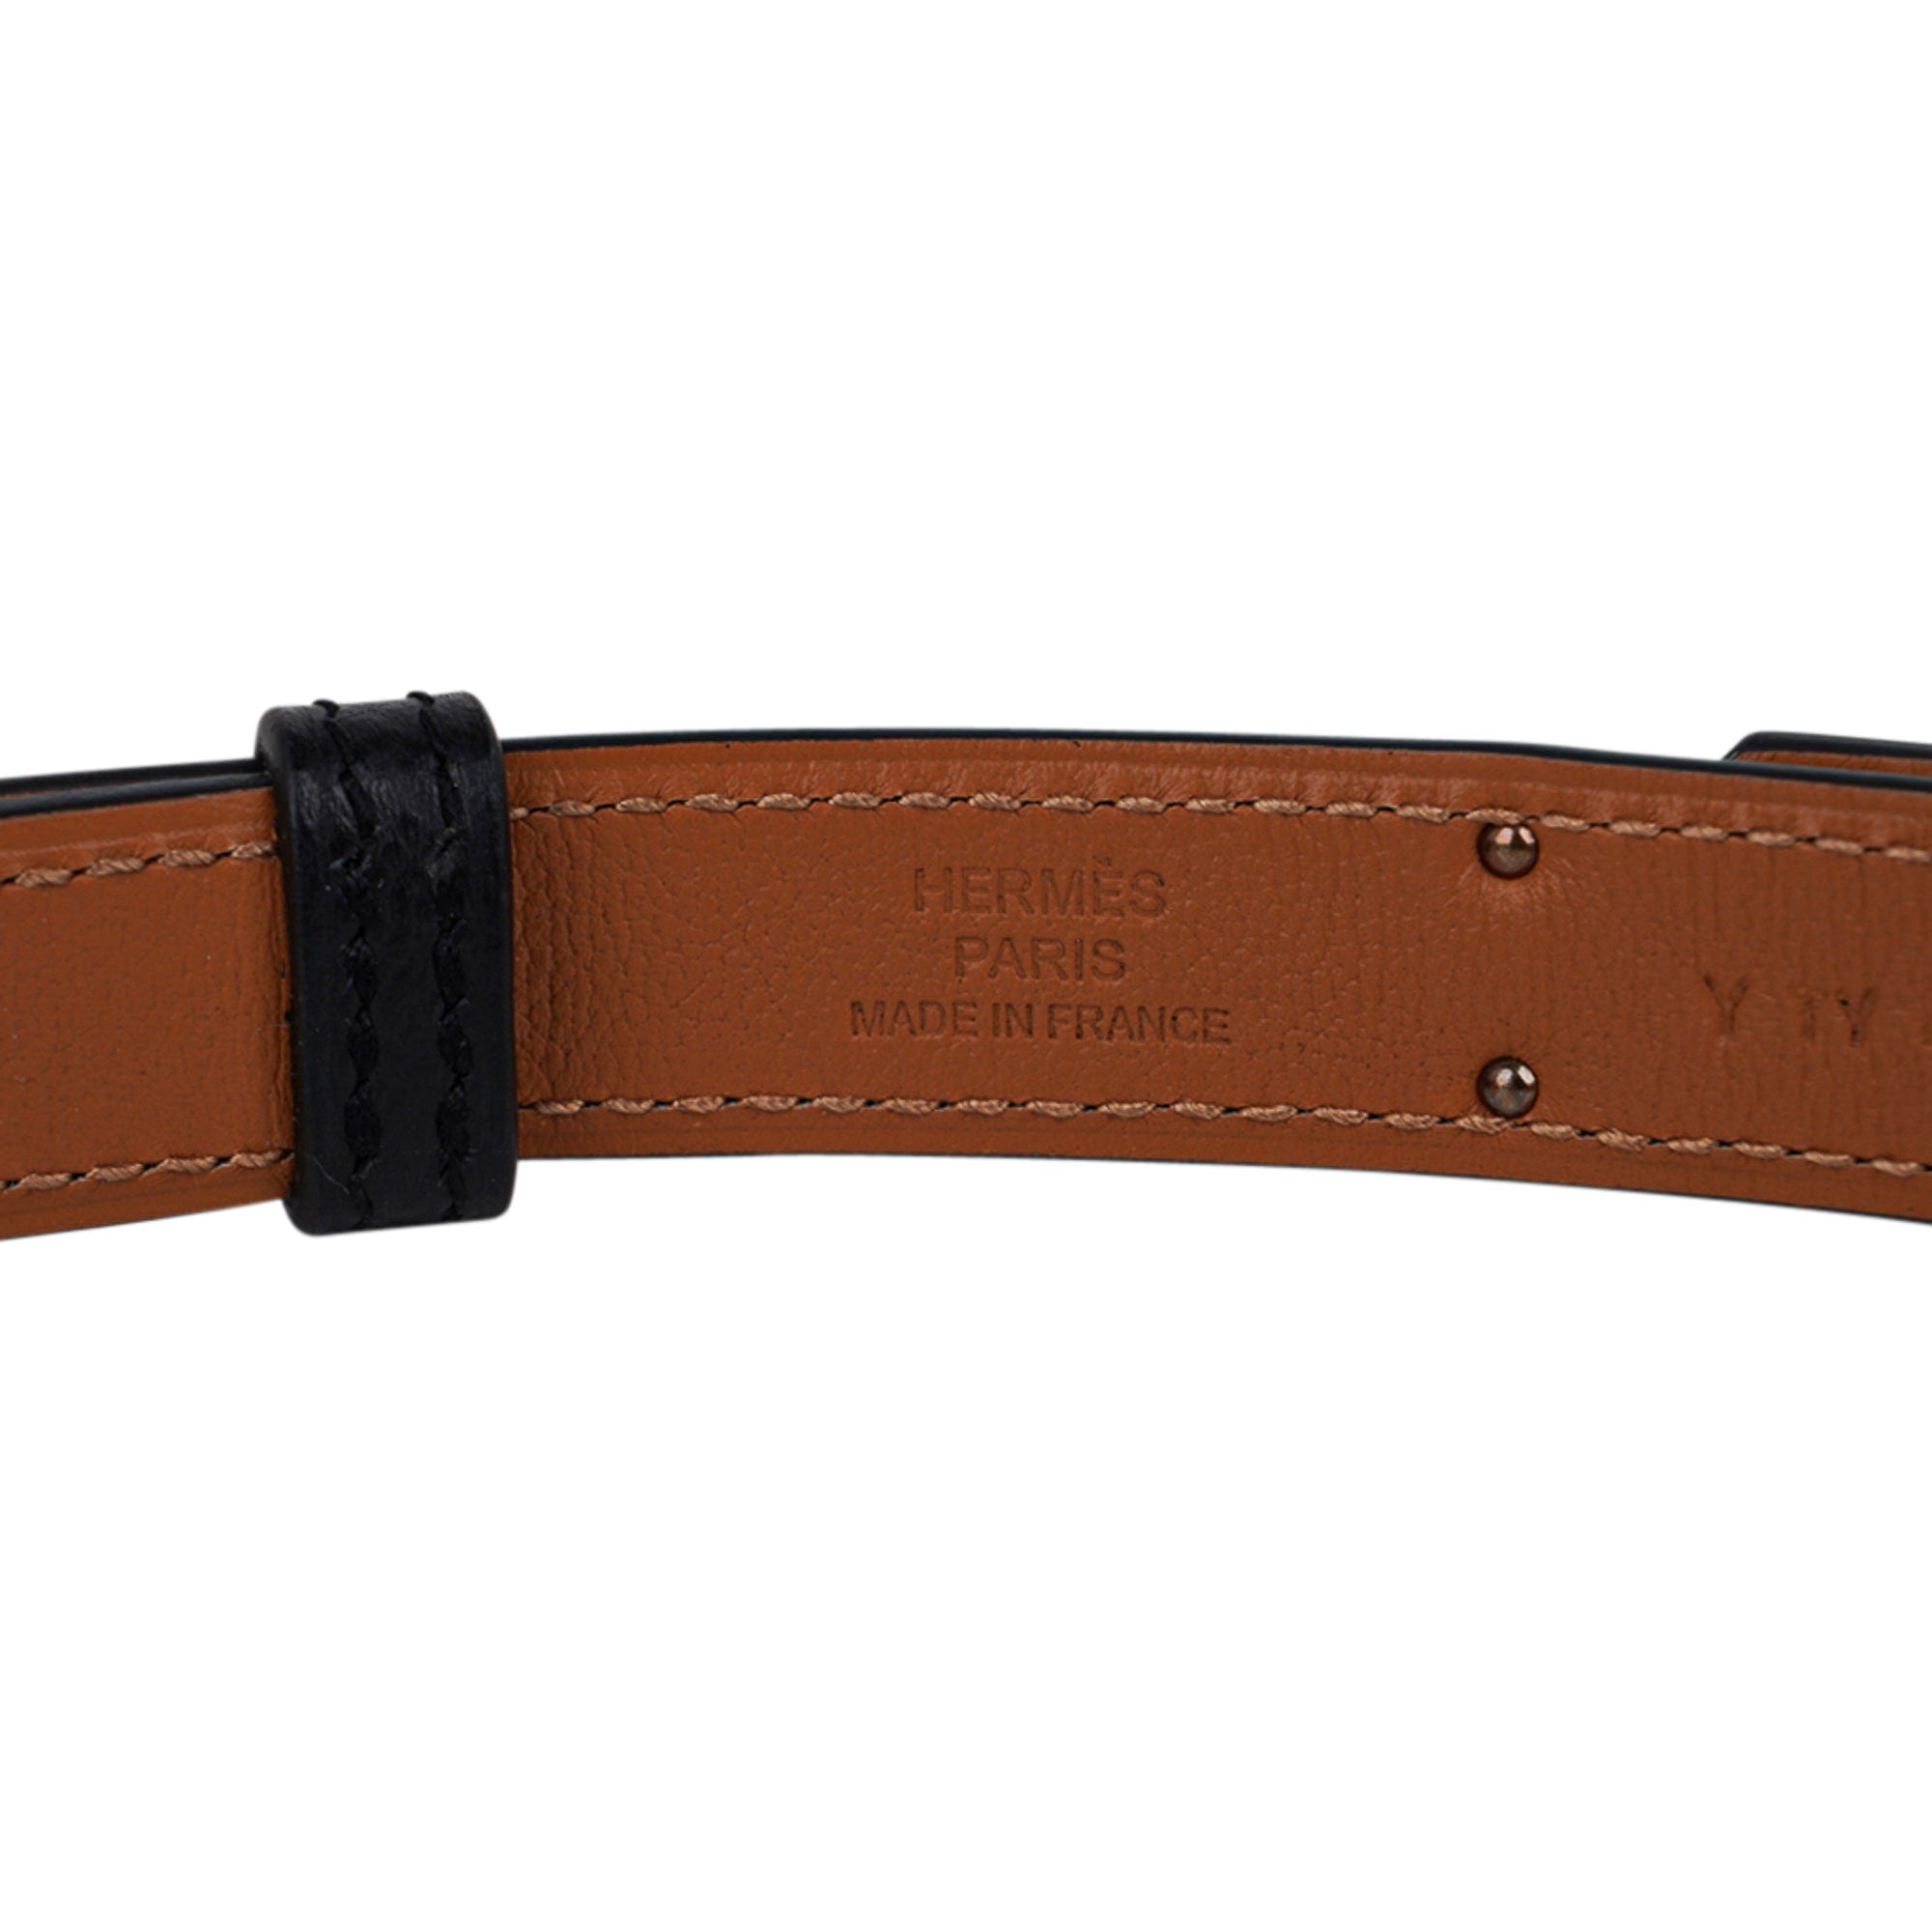 Replica Hermes Kelly 18 Belt In Black Epsom Leather